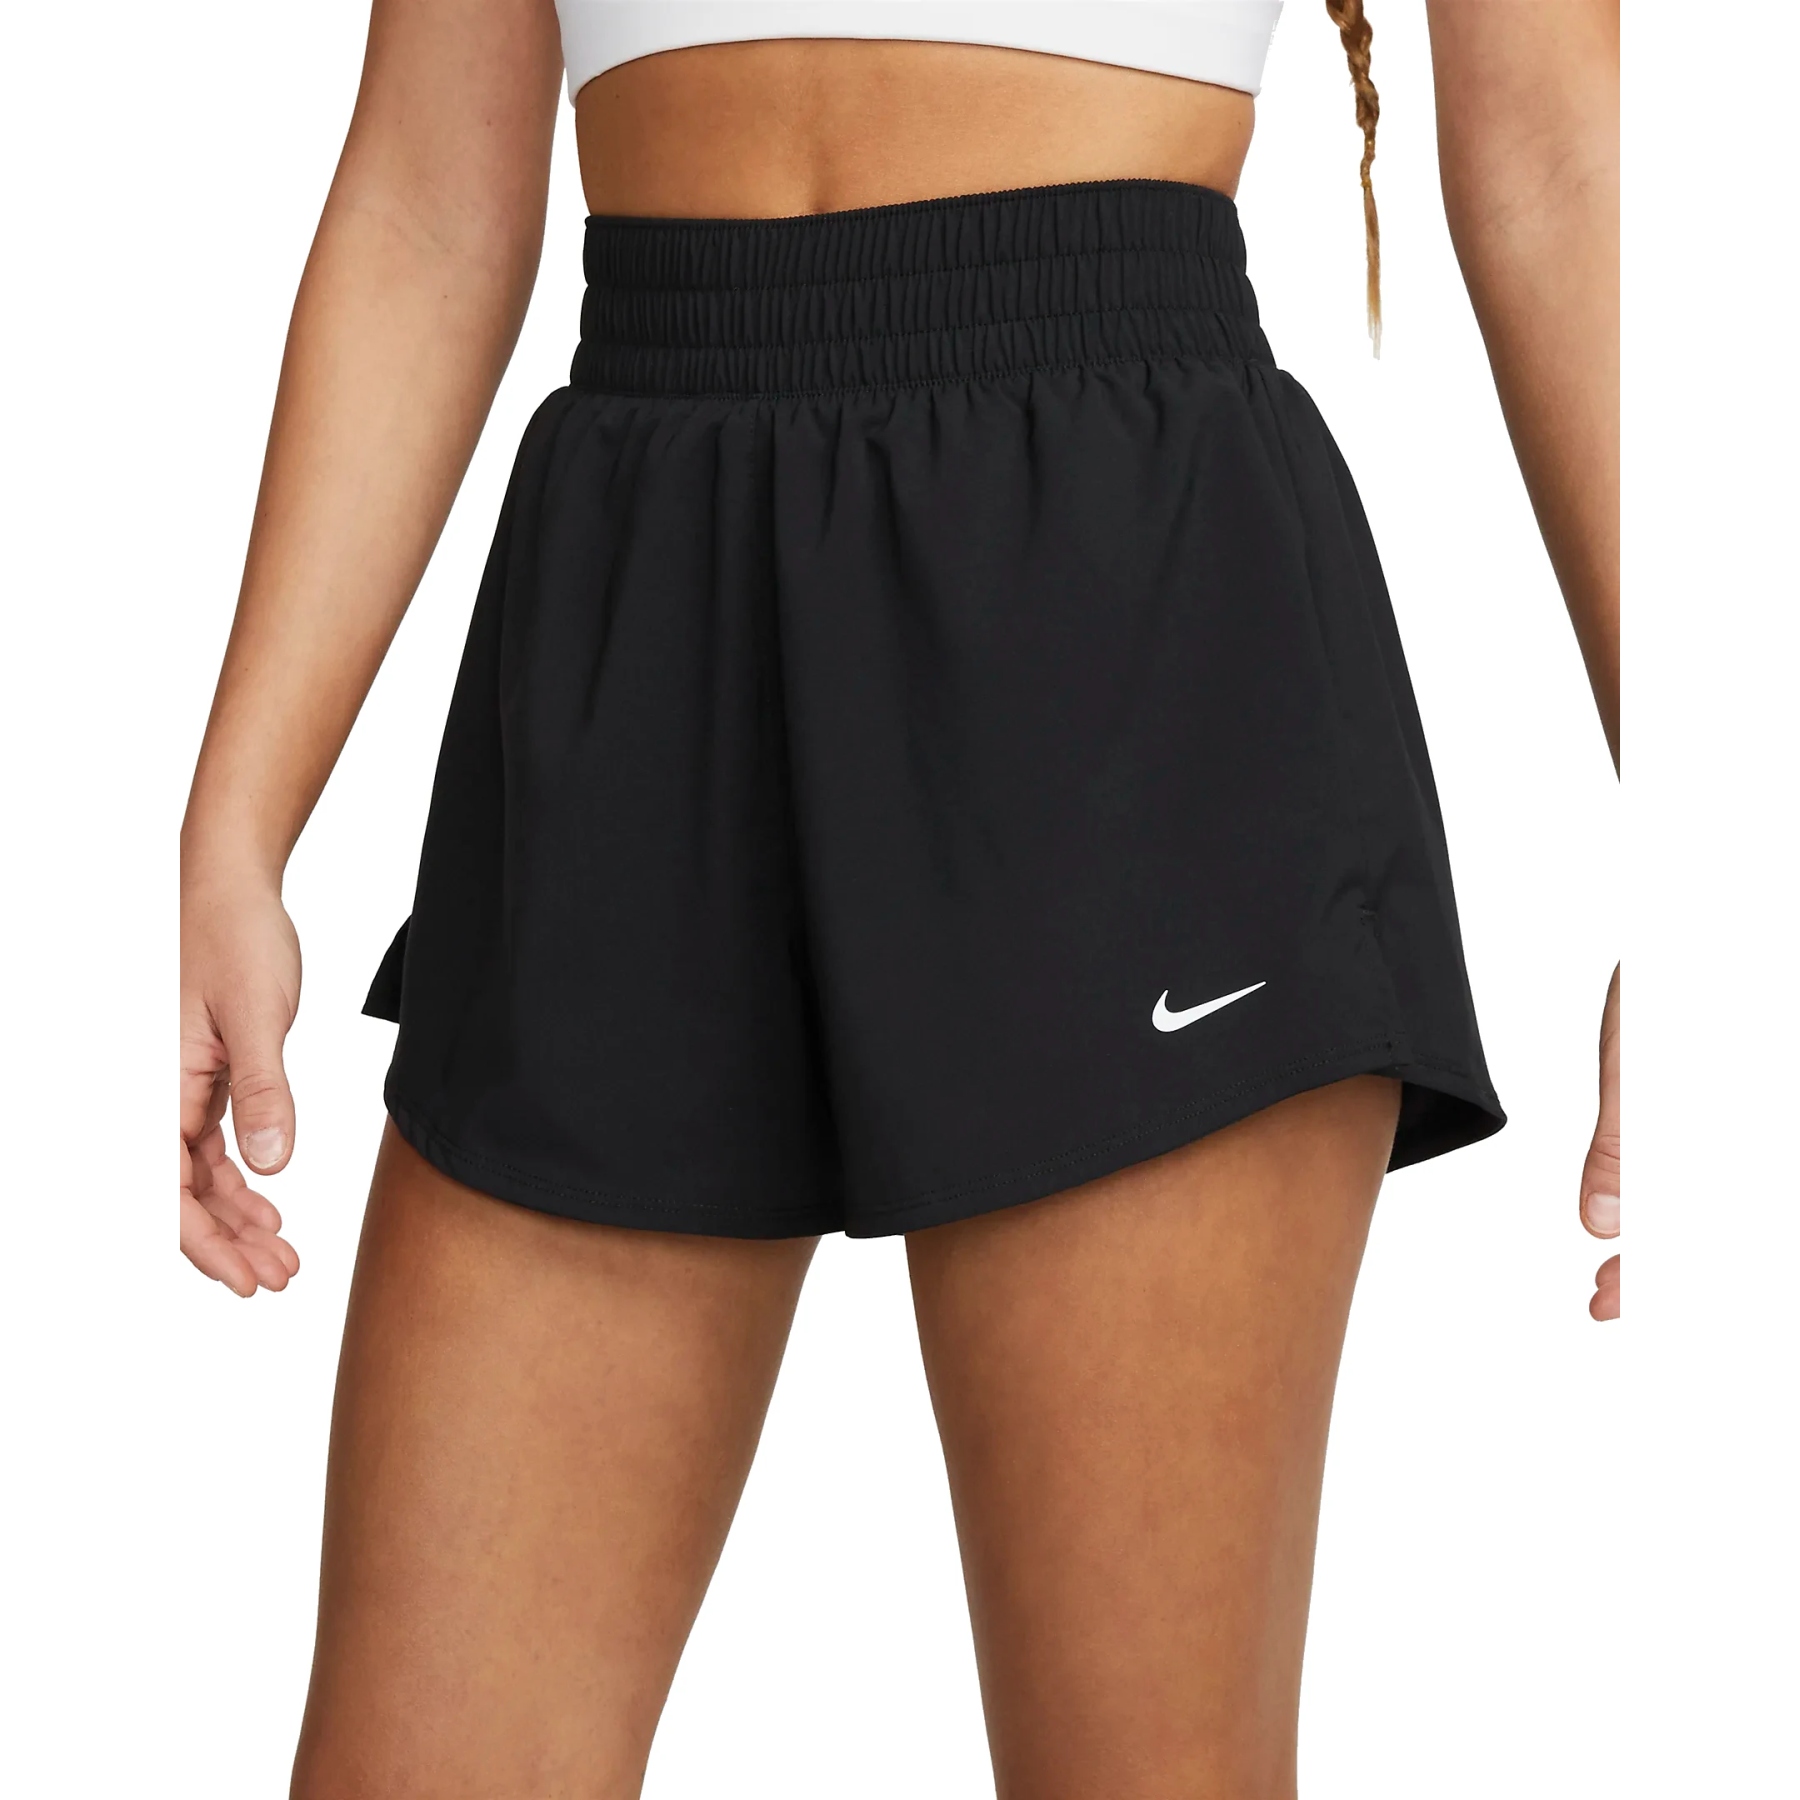 Produktbild von Nike One Dri-FIT 2-in-1-Shorts für Damen - black/reflective silver DX6016-010